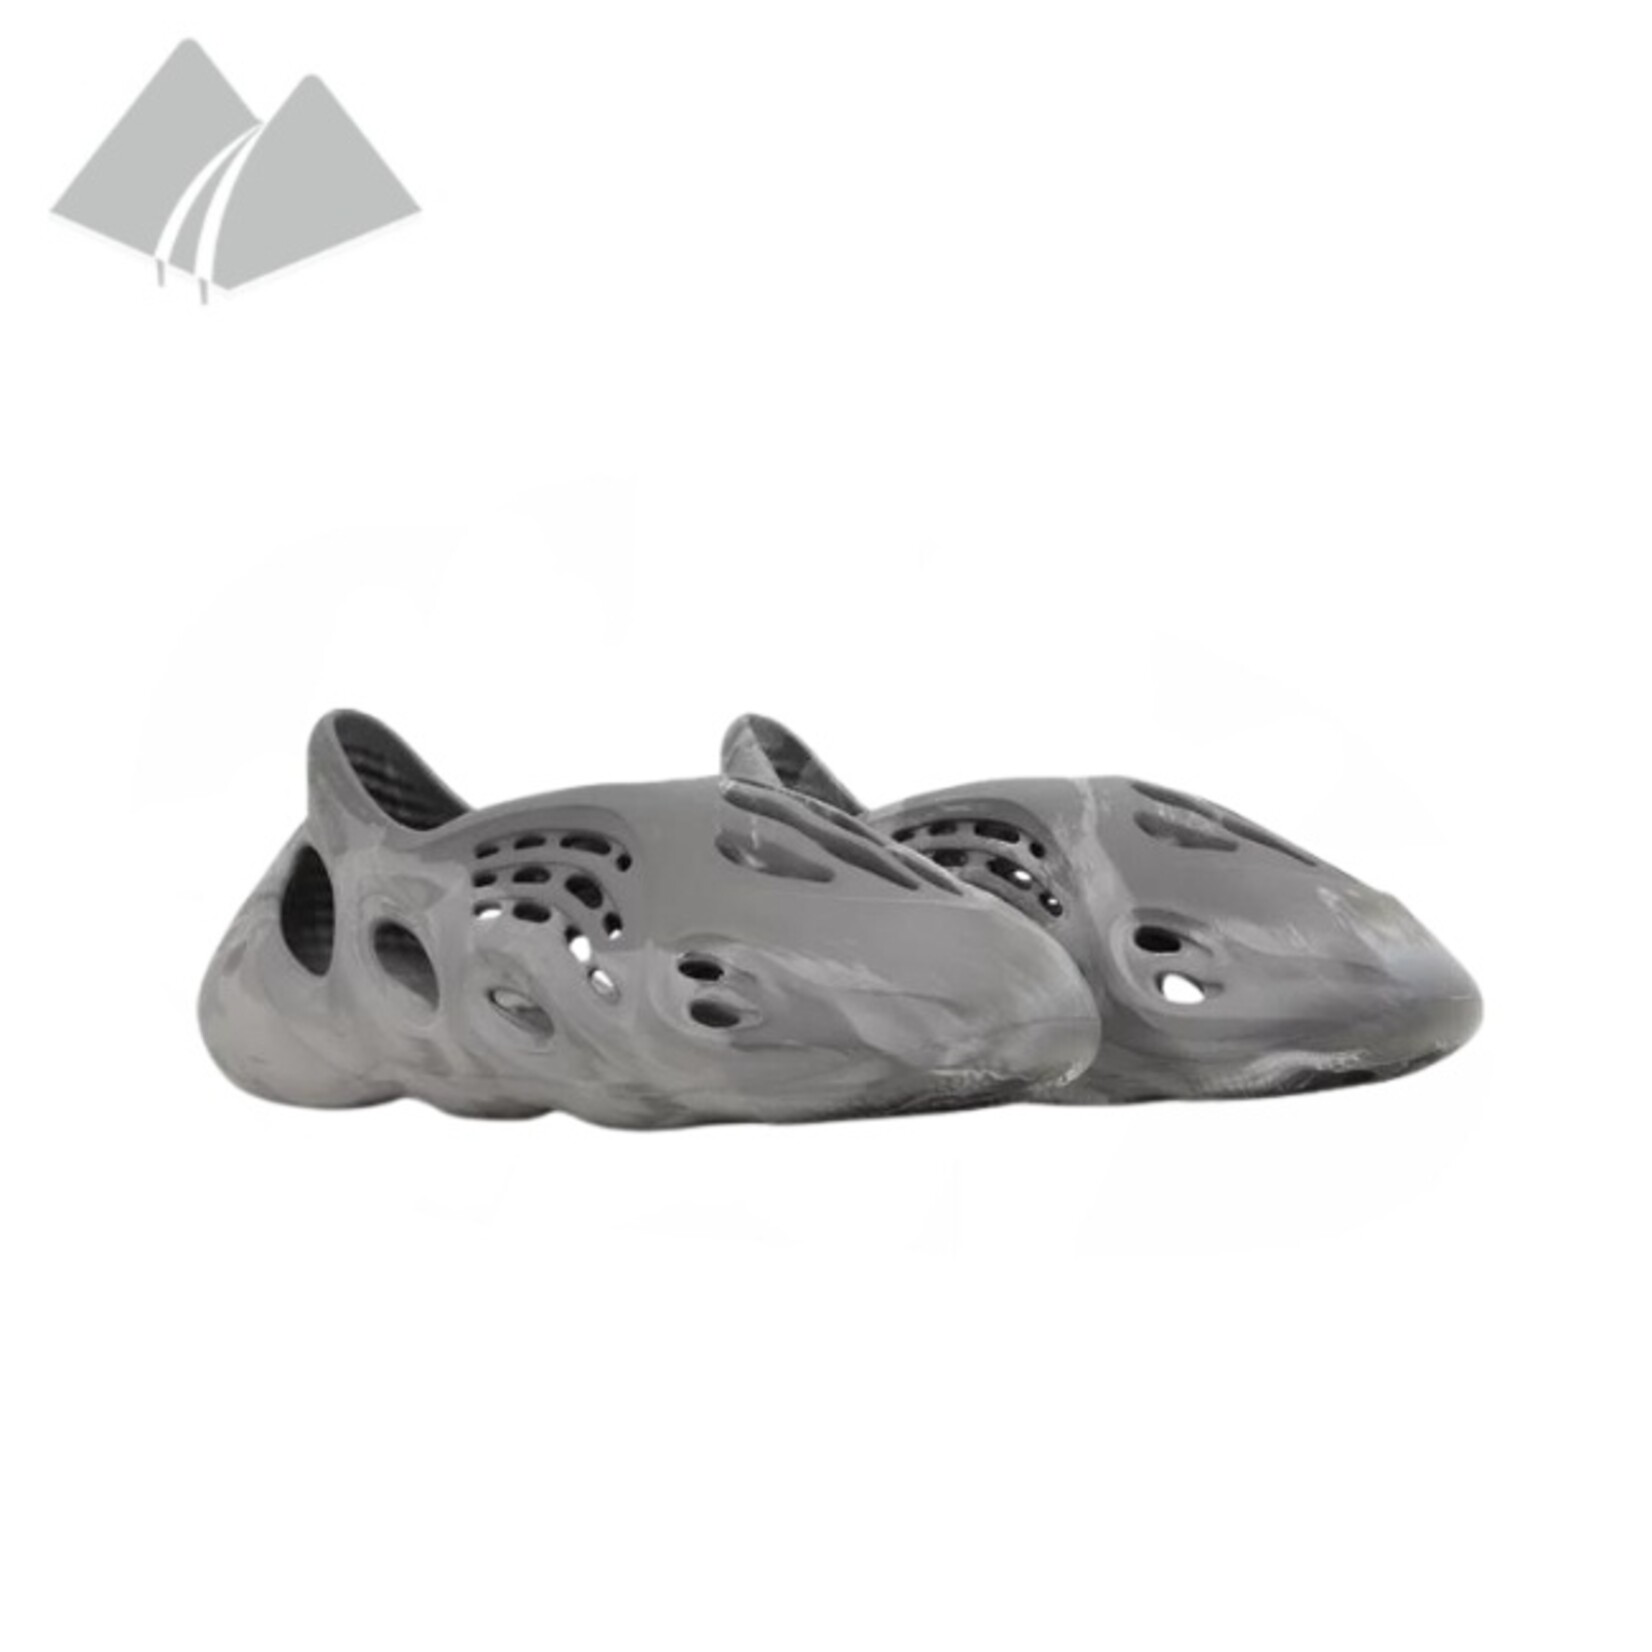 Adidas Adidas Yeezy Foam Runner (M) MX Granite